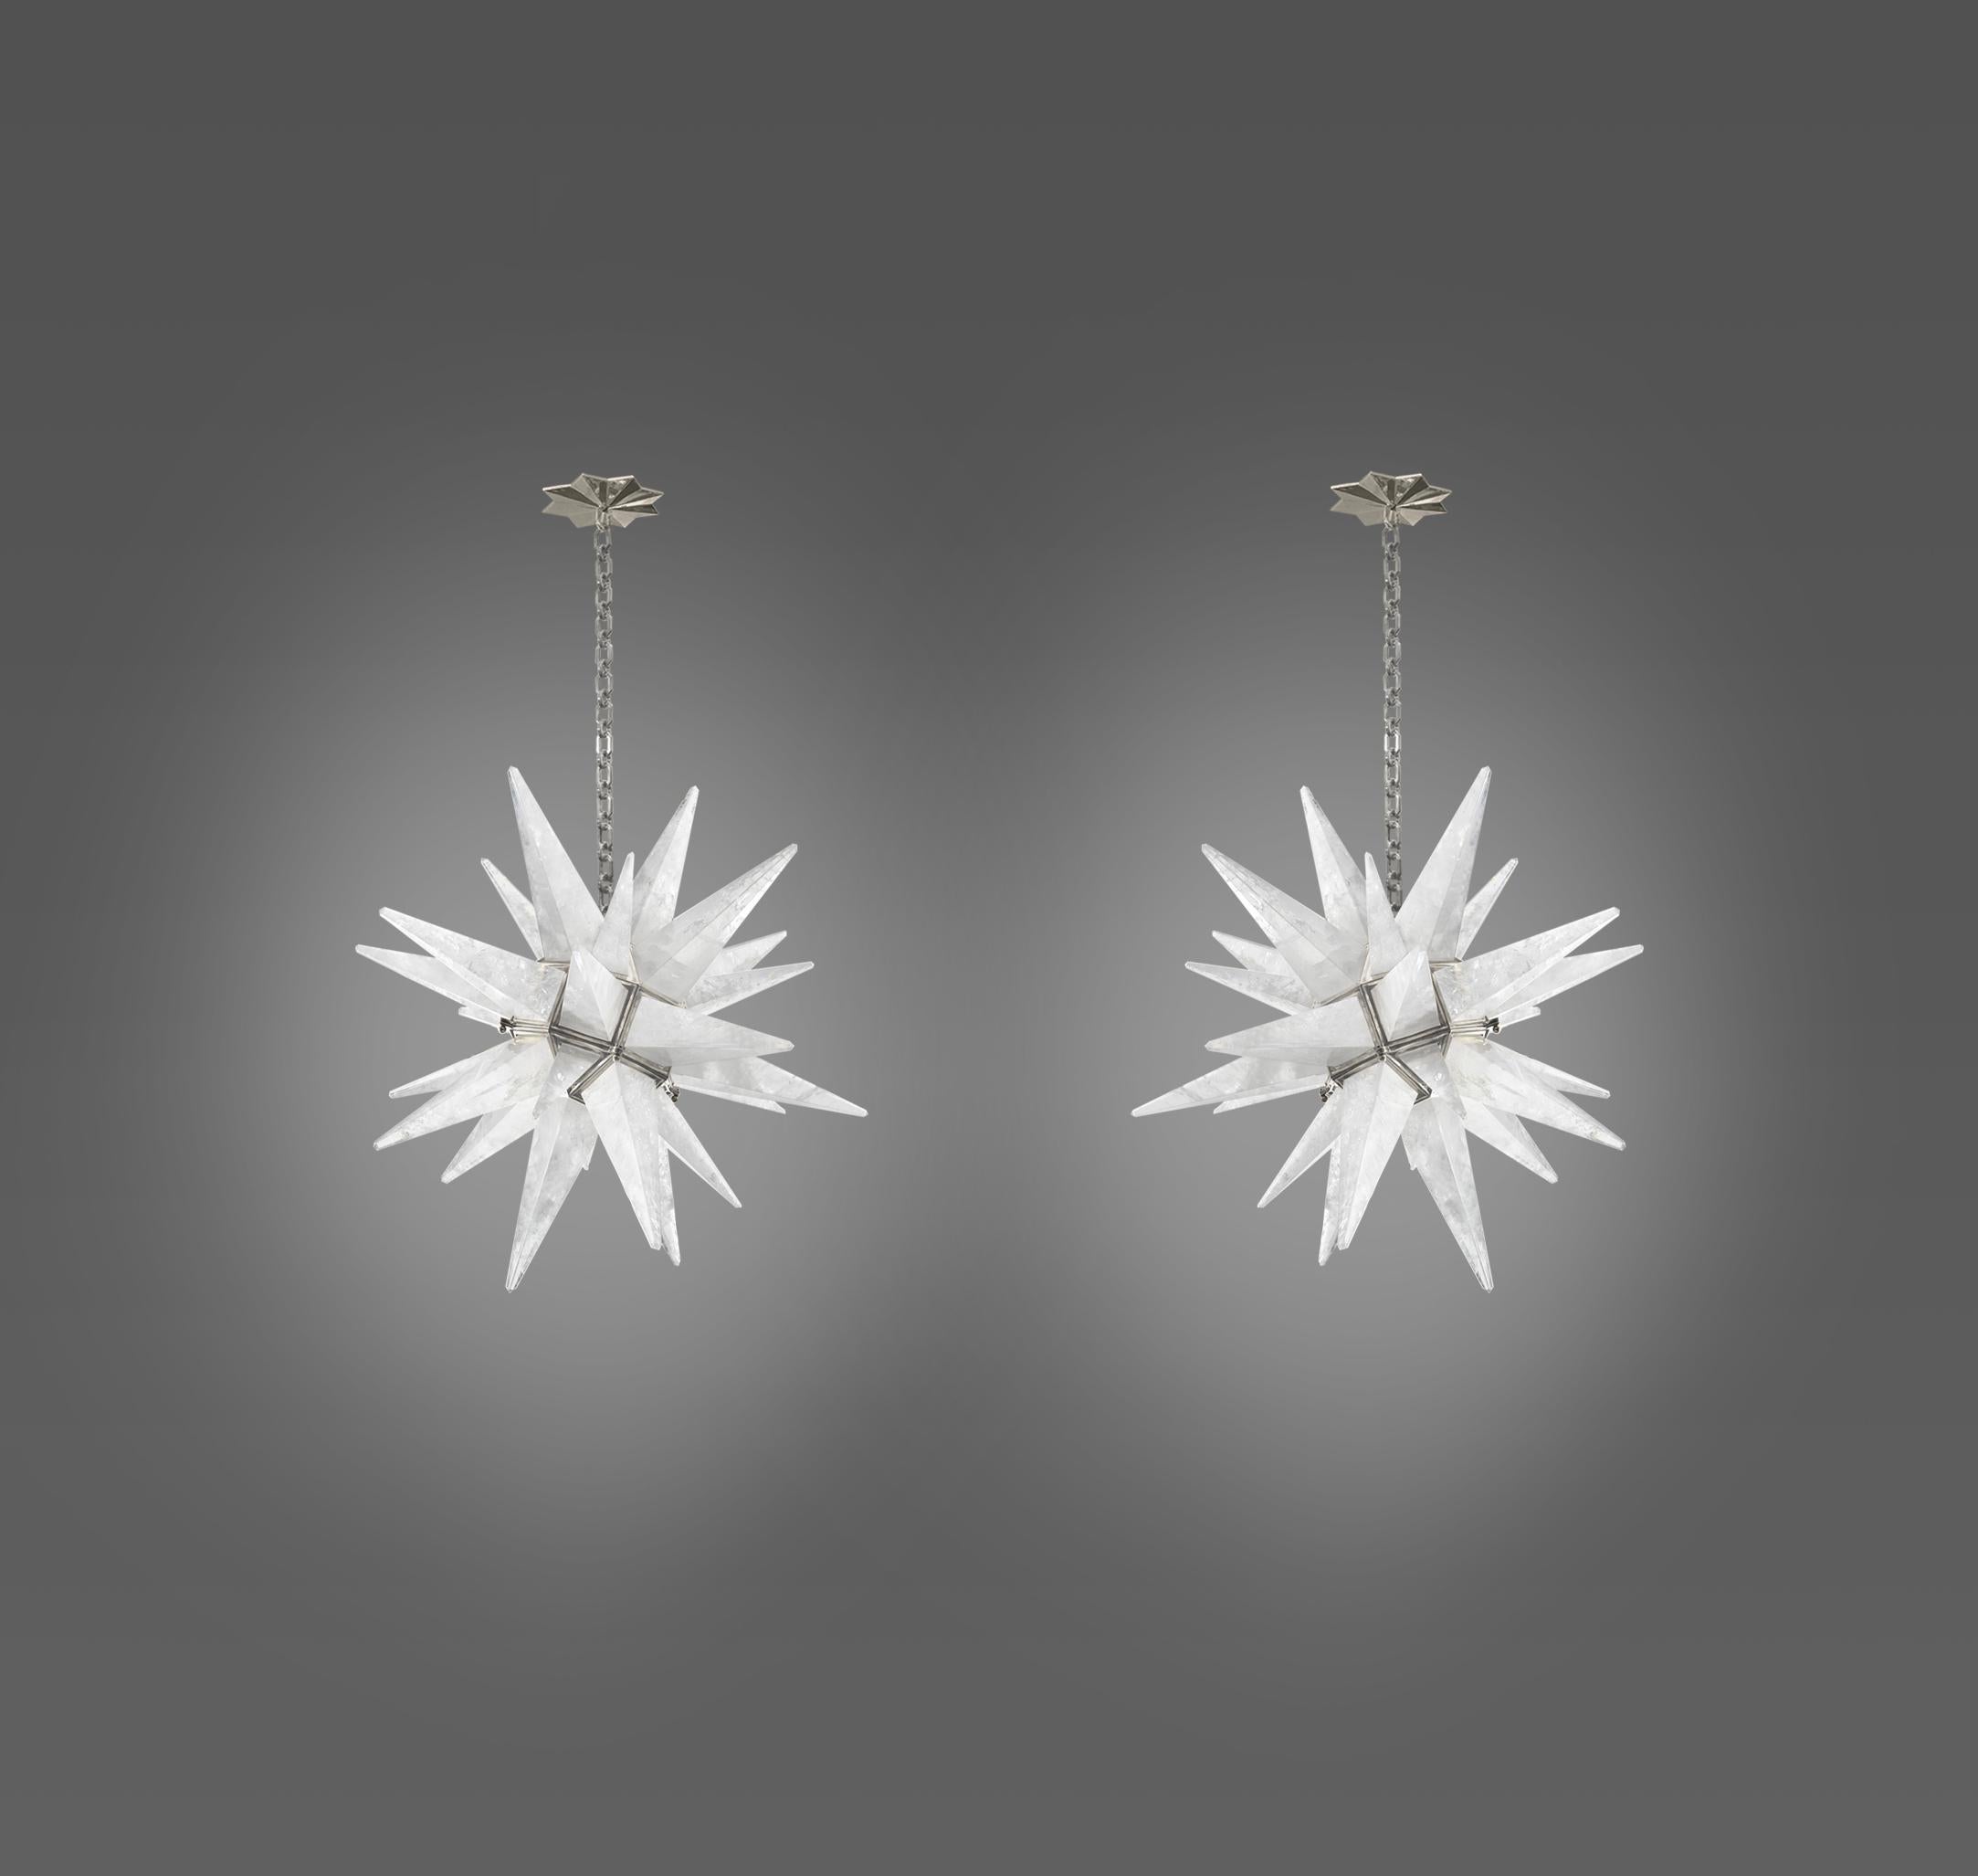 Paar sternförmige Bergkristall-Kronleuchter im Deko-Stil mit poliertem Nickelrahmen. Erstellt von Phoenix Gallery, NYC.
Der Kronleuchter ist 20